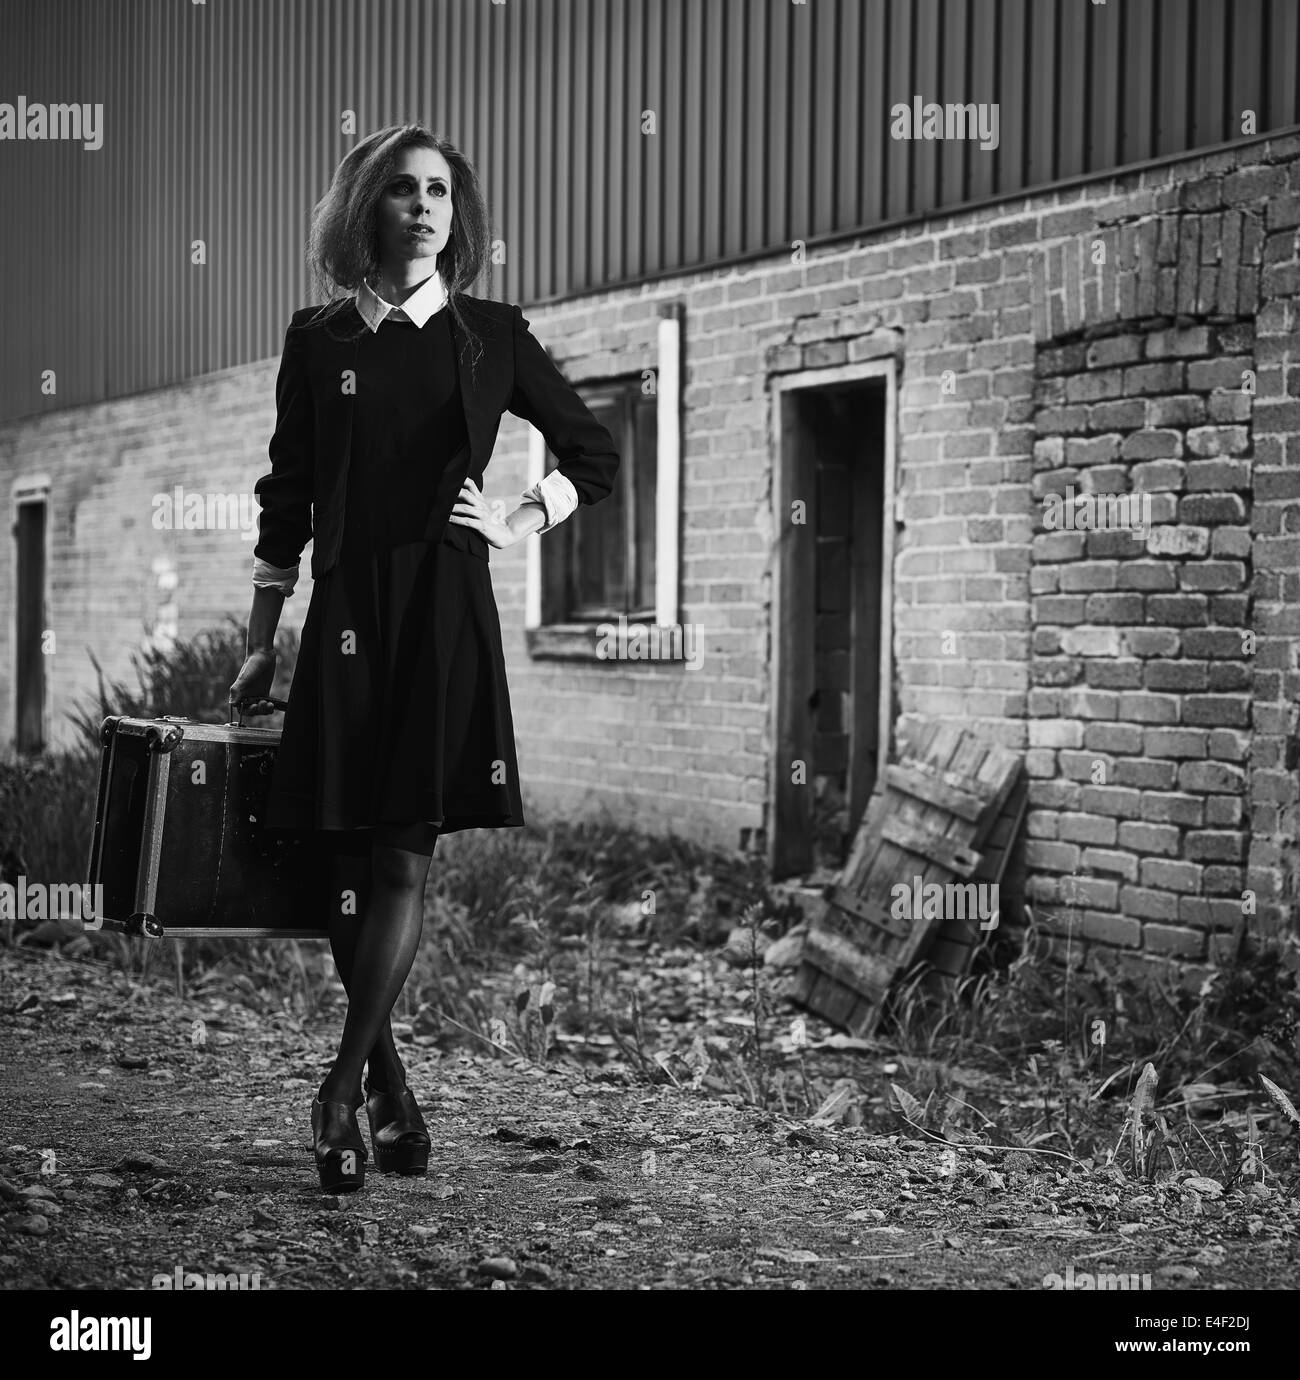 Moda joven con su maleta, vieja escena rural, imagen en blanco y negro Foto de stock